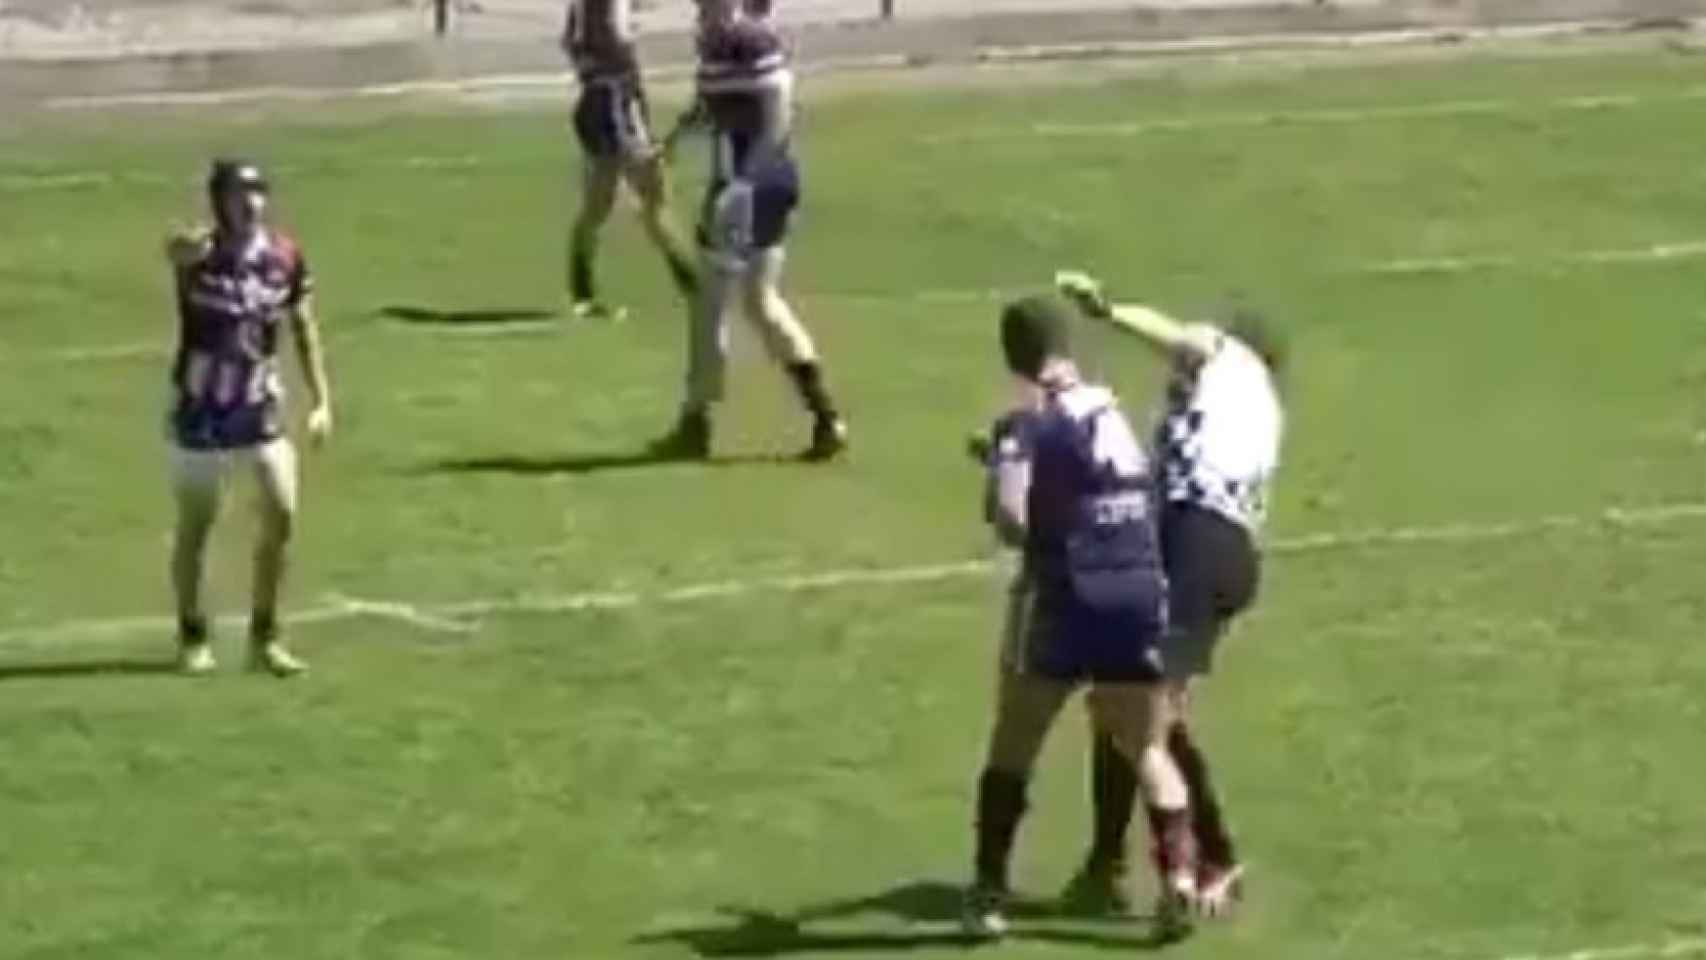 Momento en el que el jugador de rugby le asesta un derechazo al árbitro.